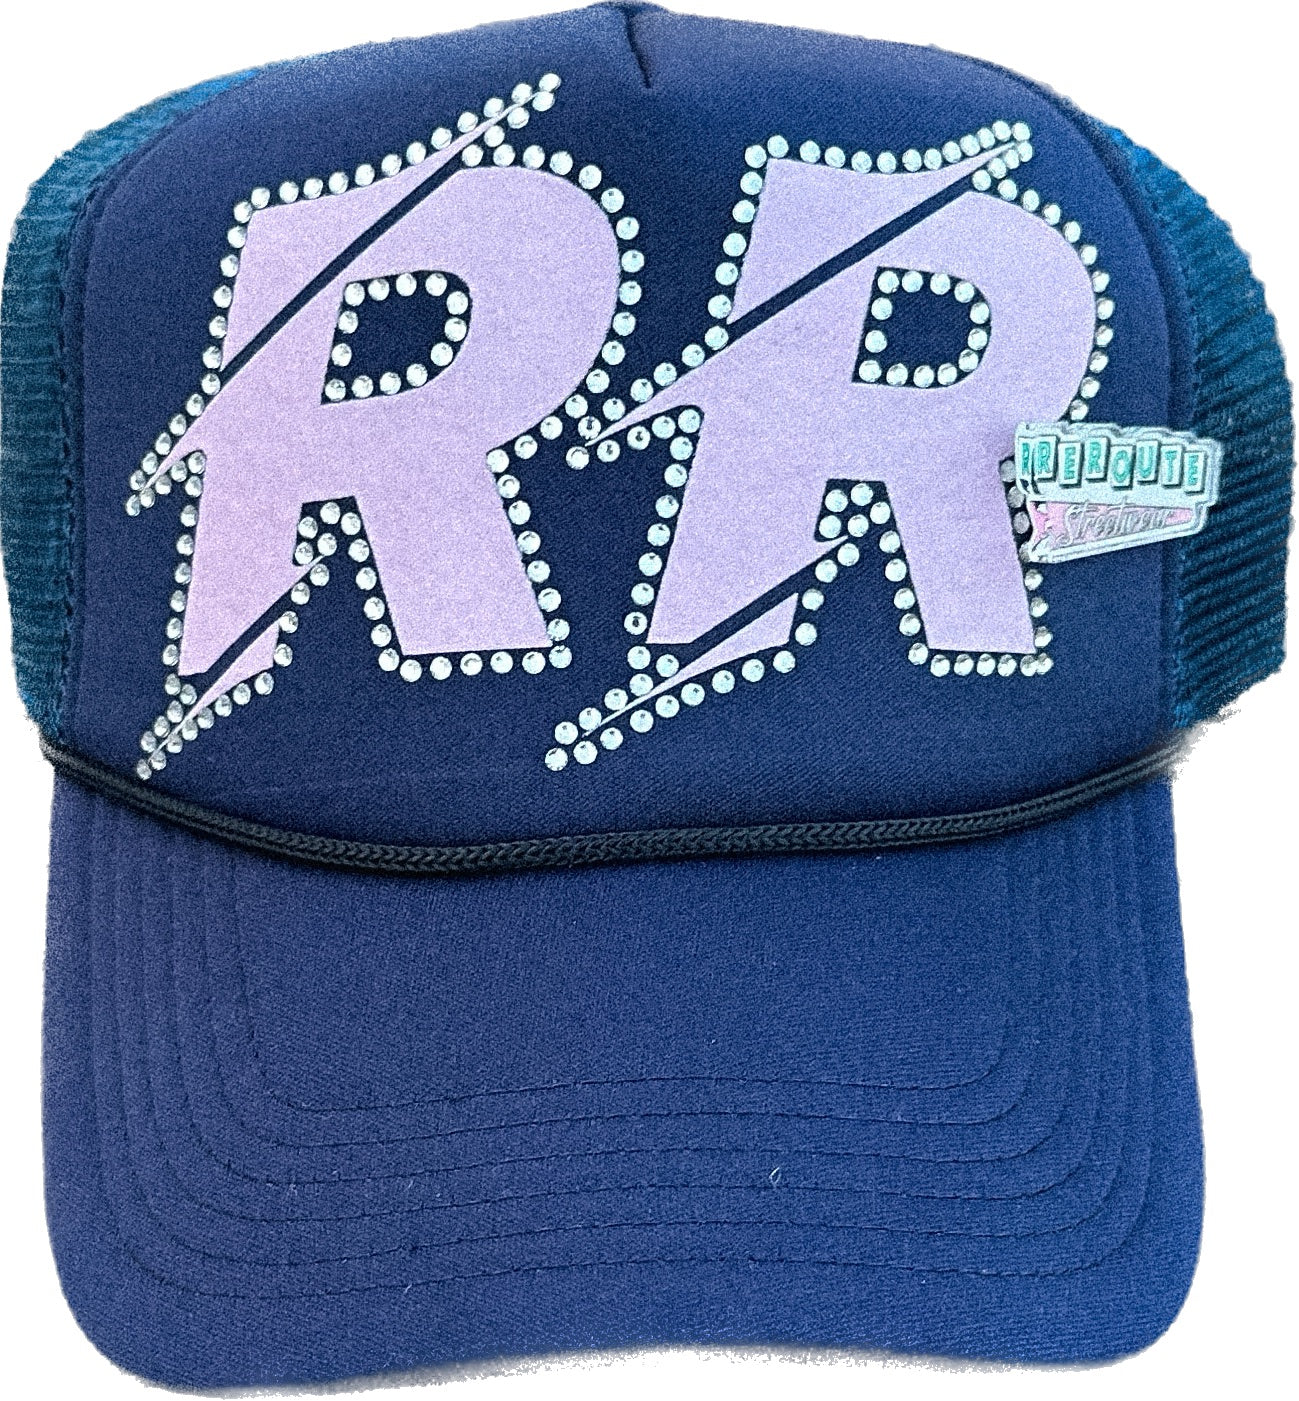 "RR" V2 RHINESTONES TRUCKER HATS